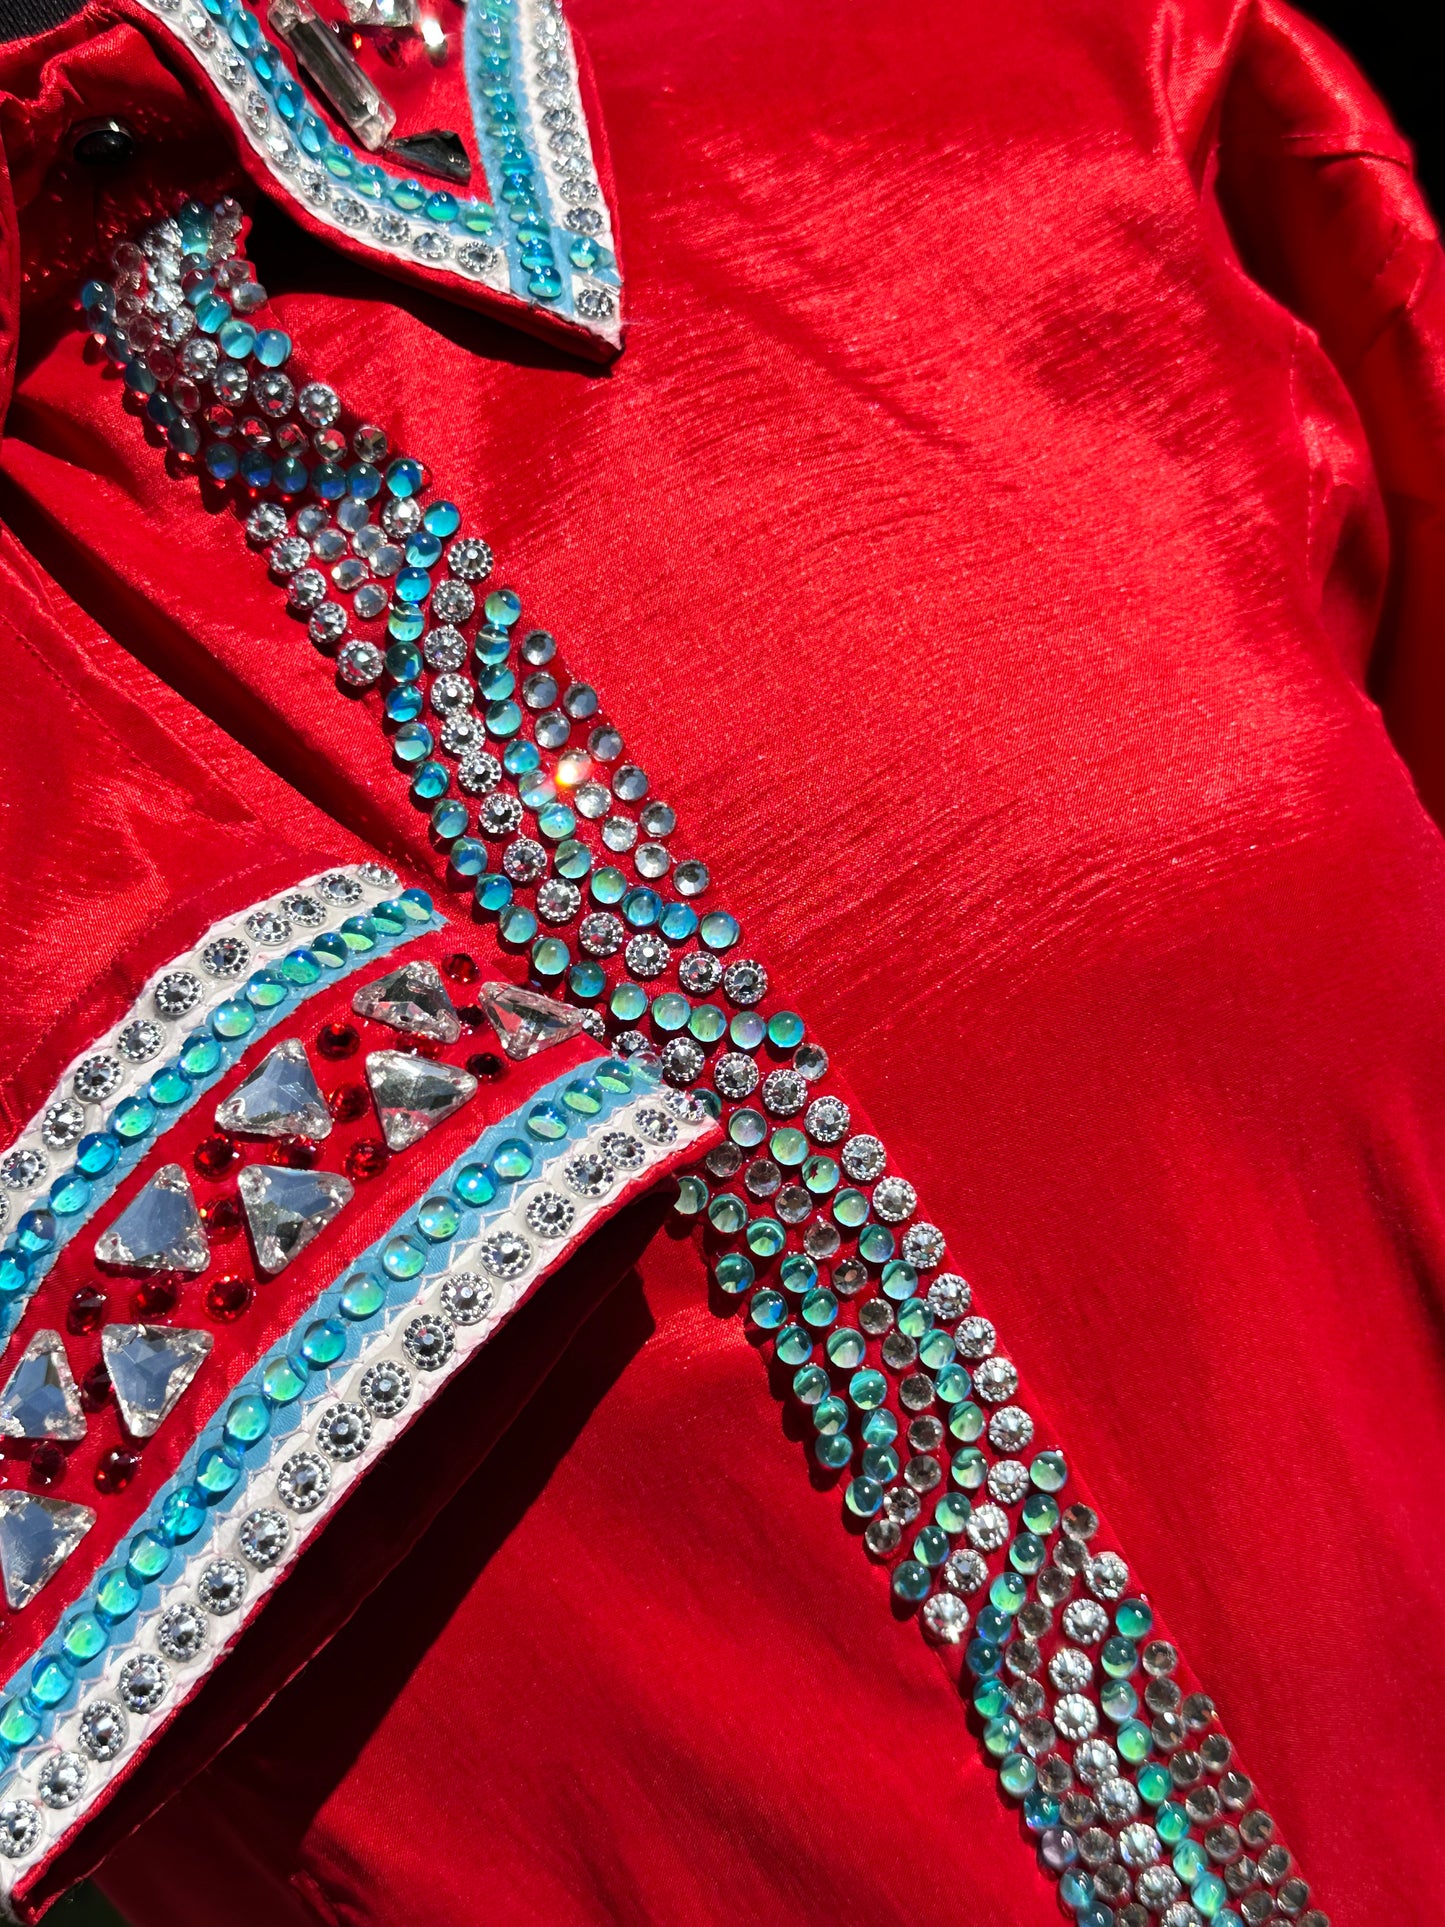 Size XXL Day Shirt hidden zipper stretch taffeta red and aqua Retro design